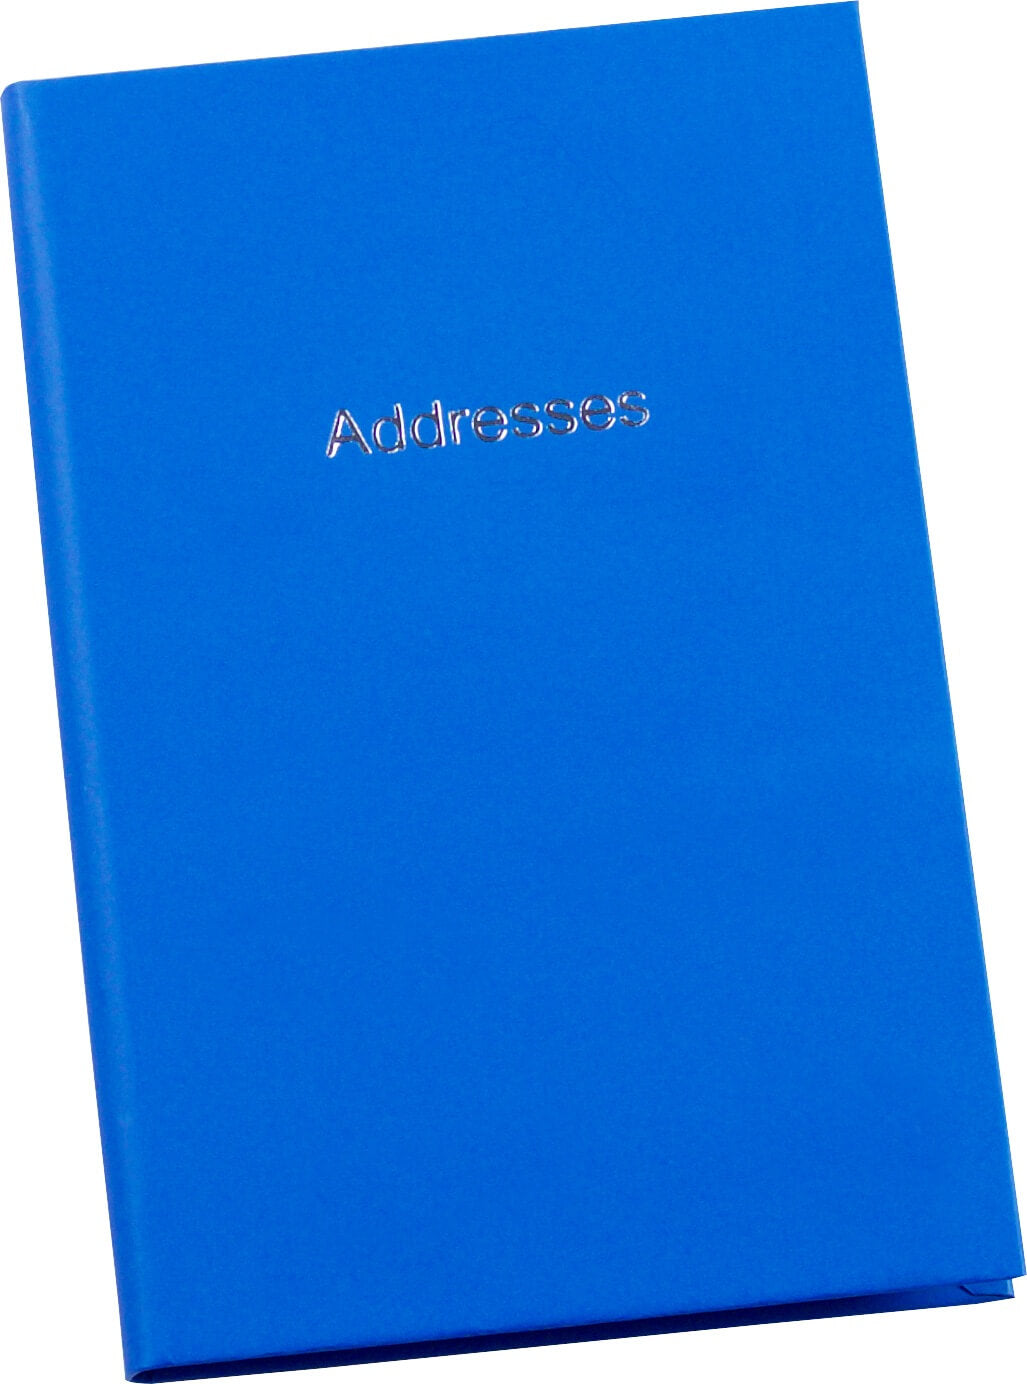 Pocket Address Book - EL2